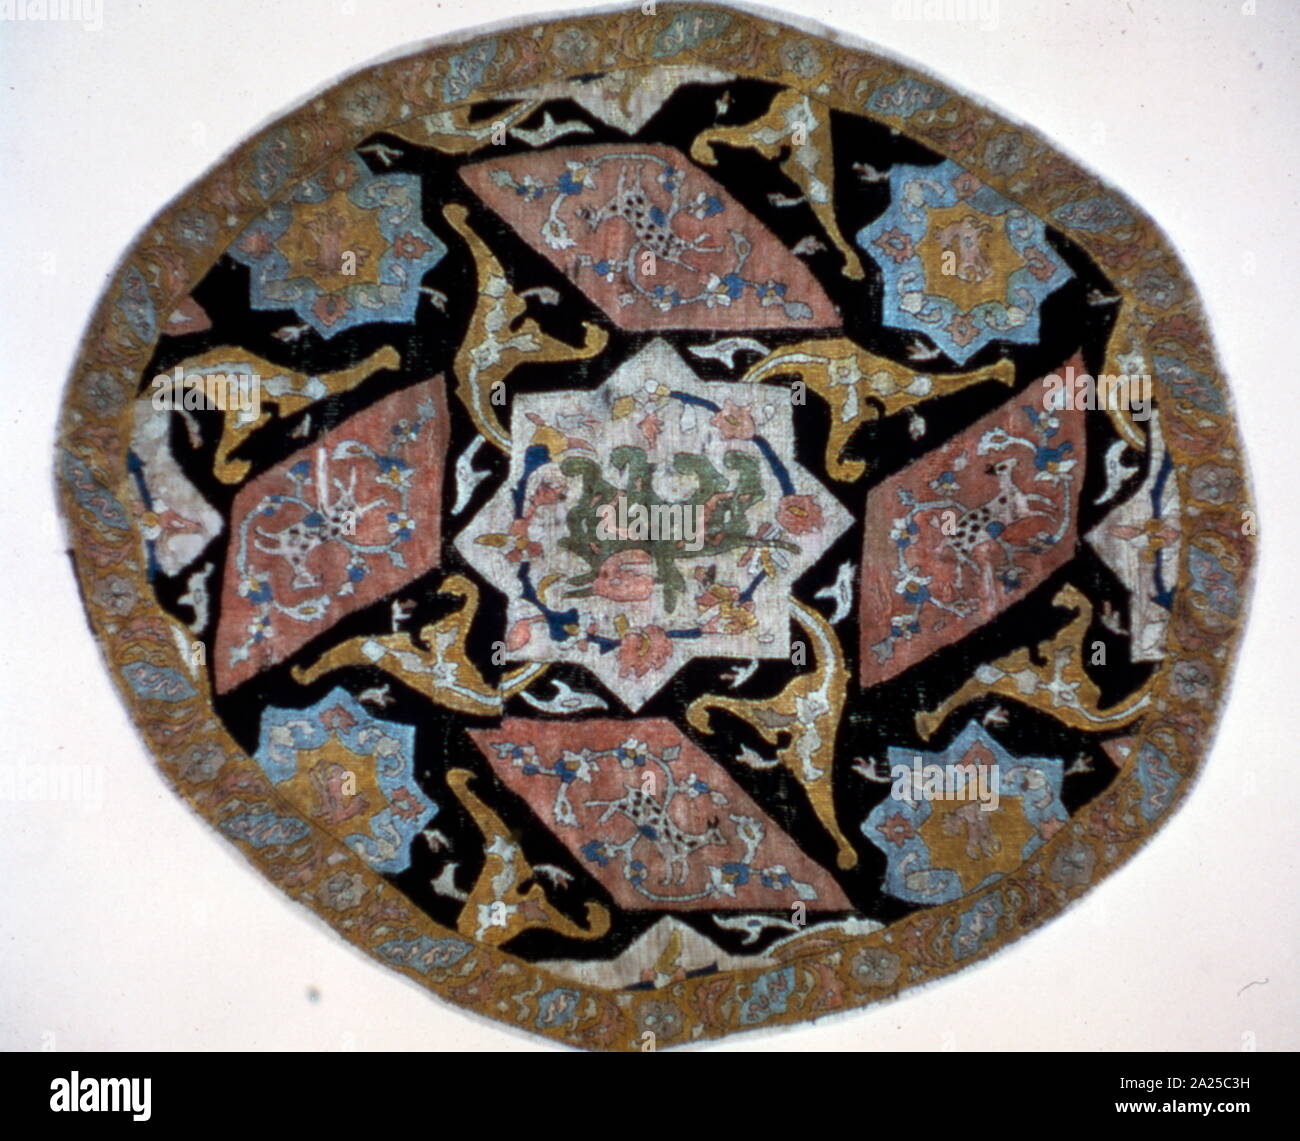 Safavid, persiano tovaglia con i tradizionali modelli Islamici, secolo XVII, Iran Foto Stock